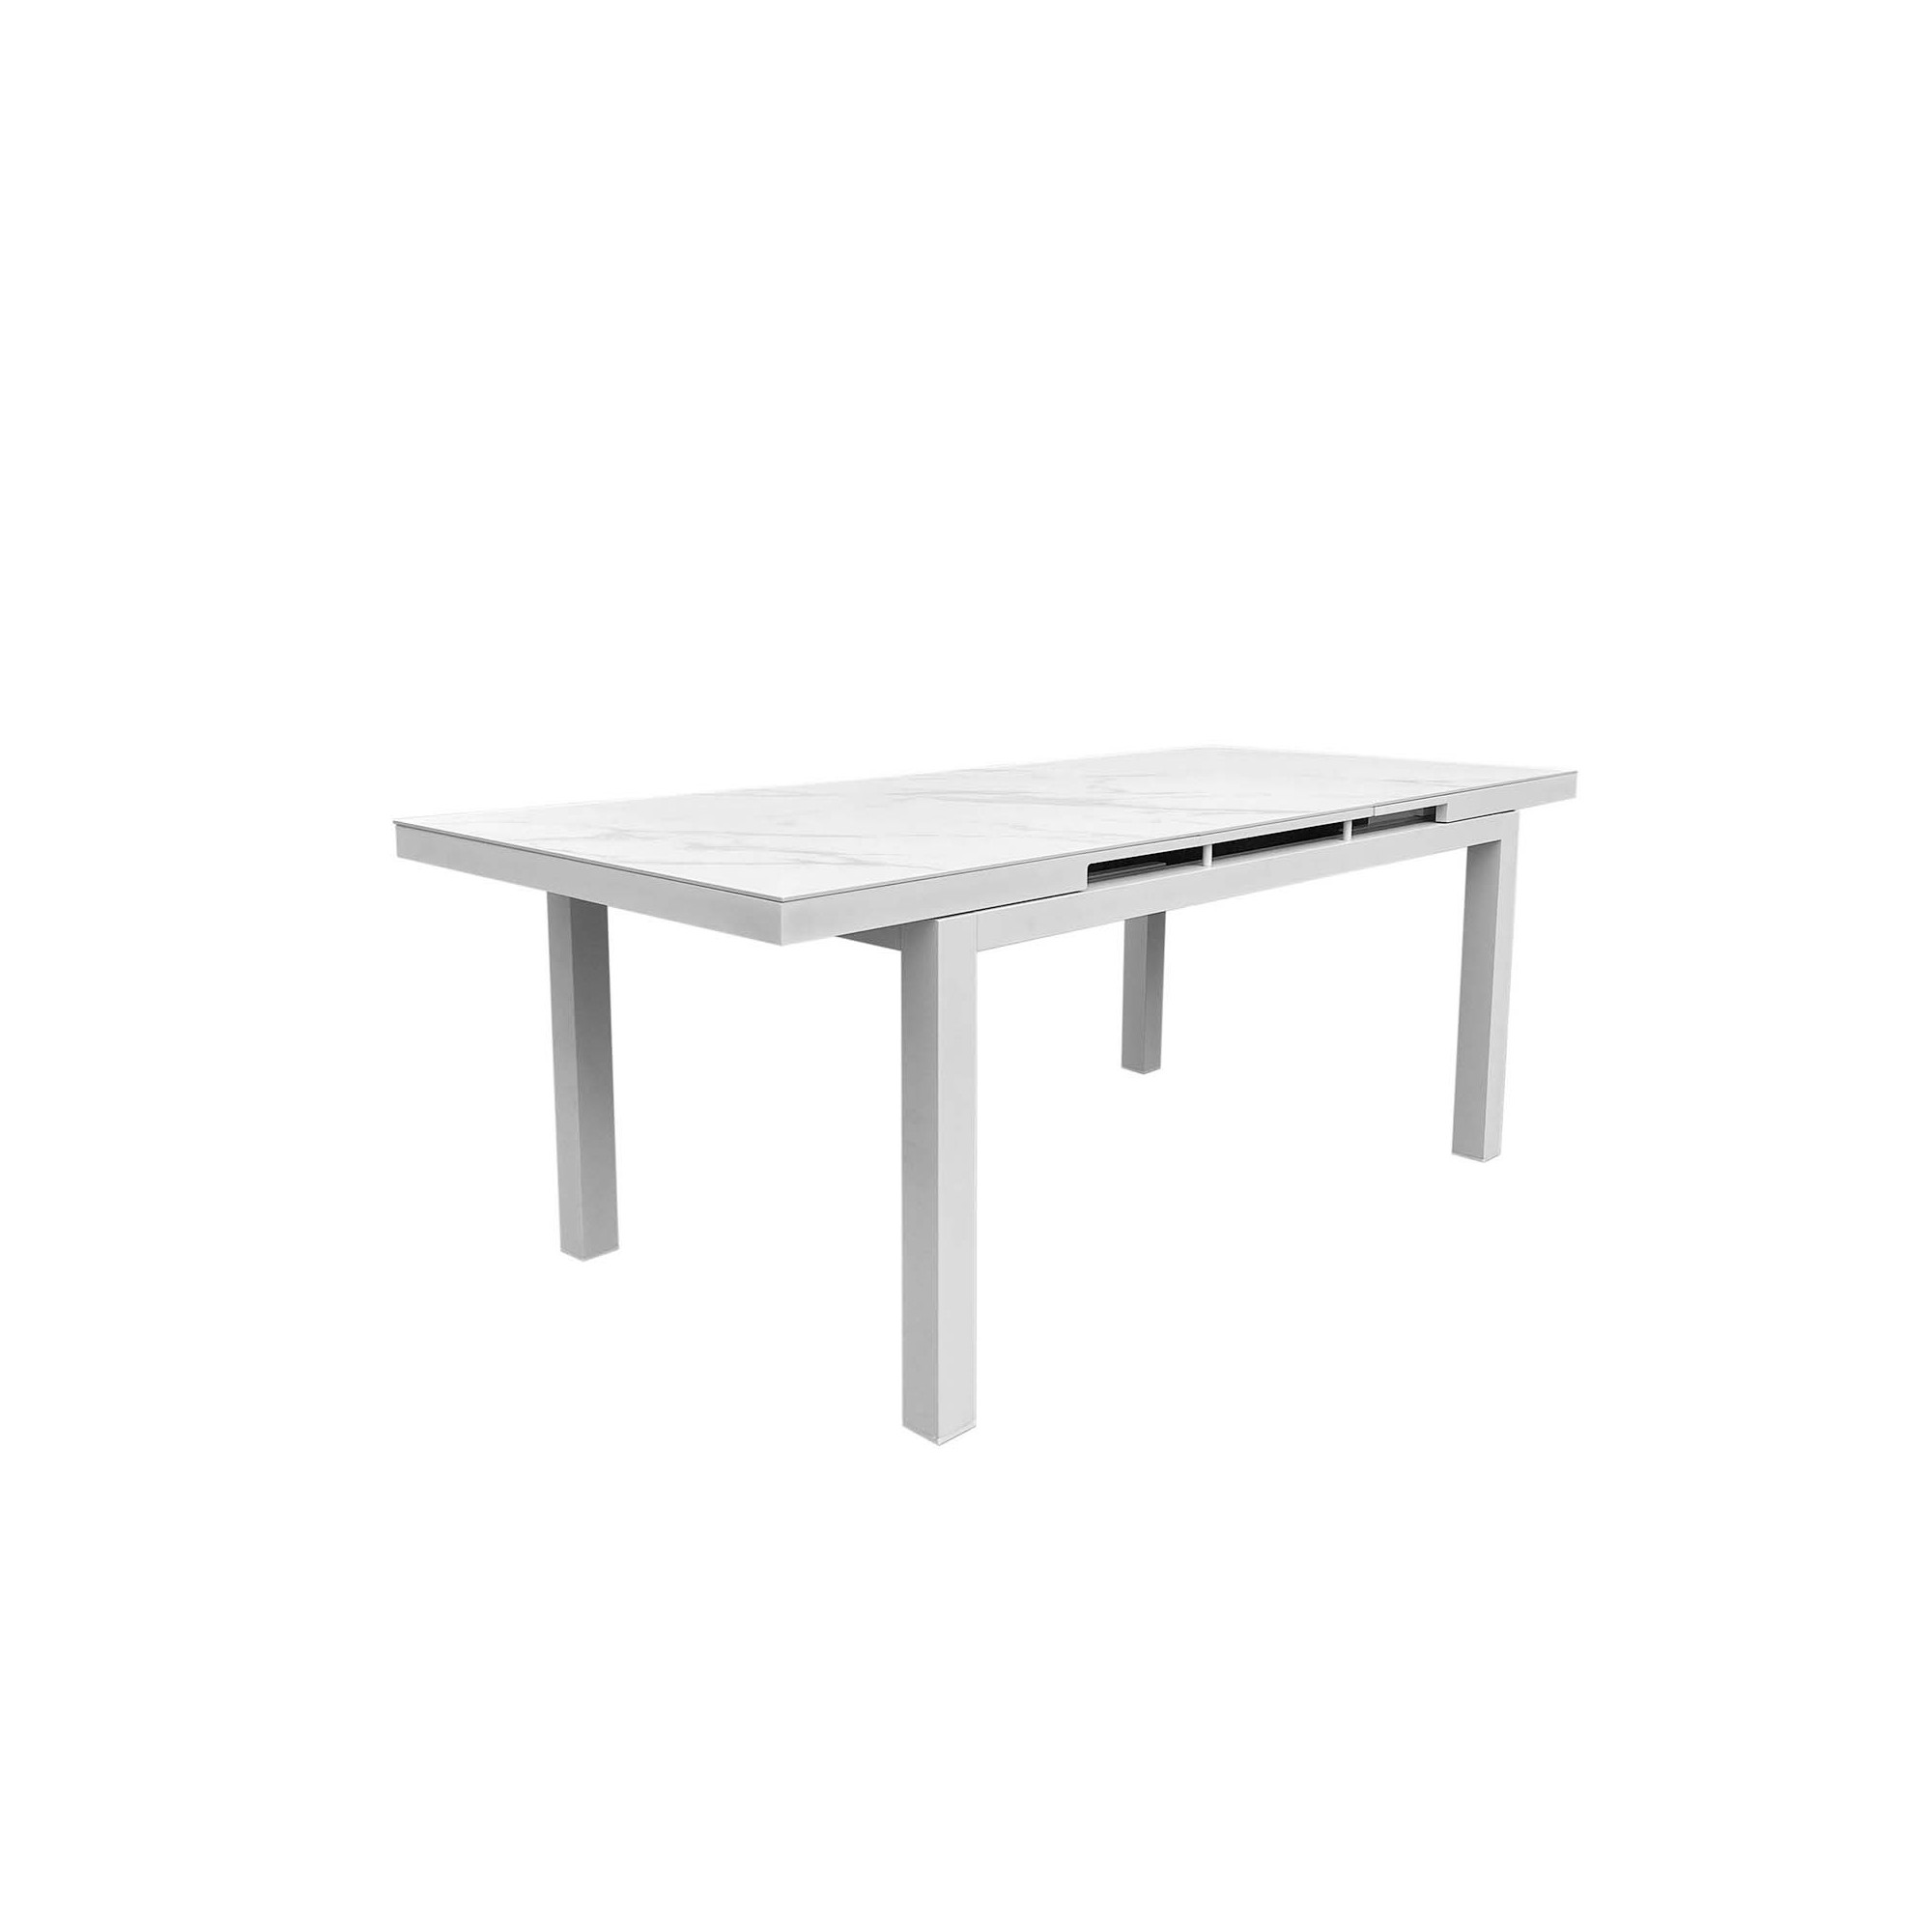 Table de jardin à rallonge Coppi blanche 280x100cm Gescova